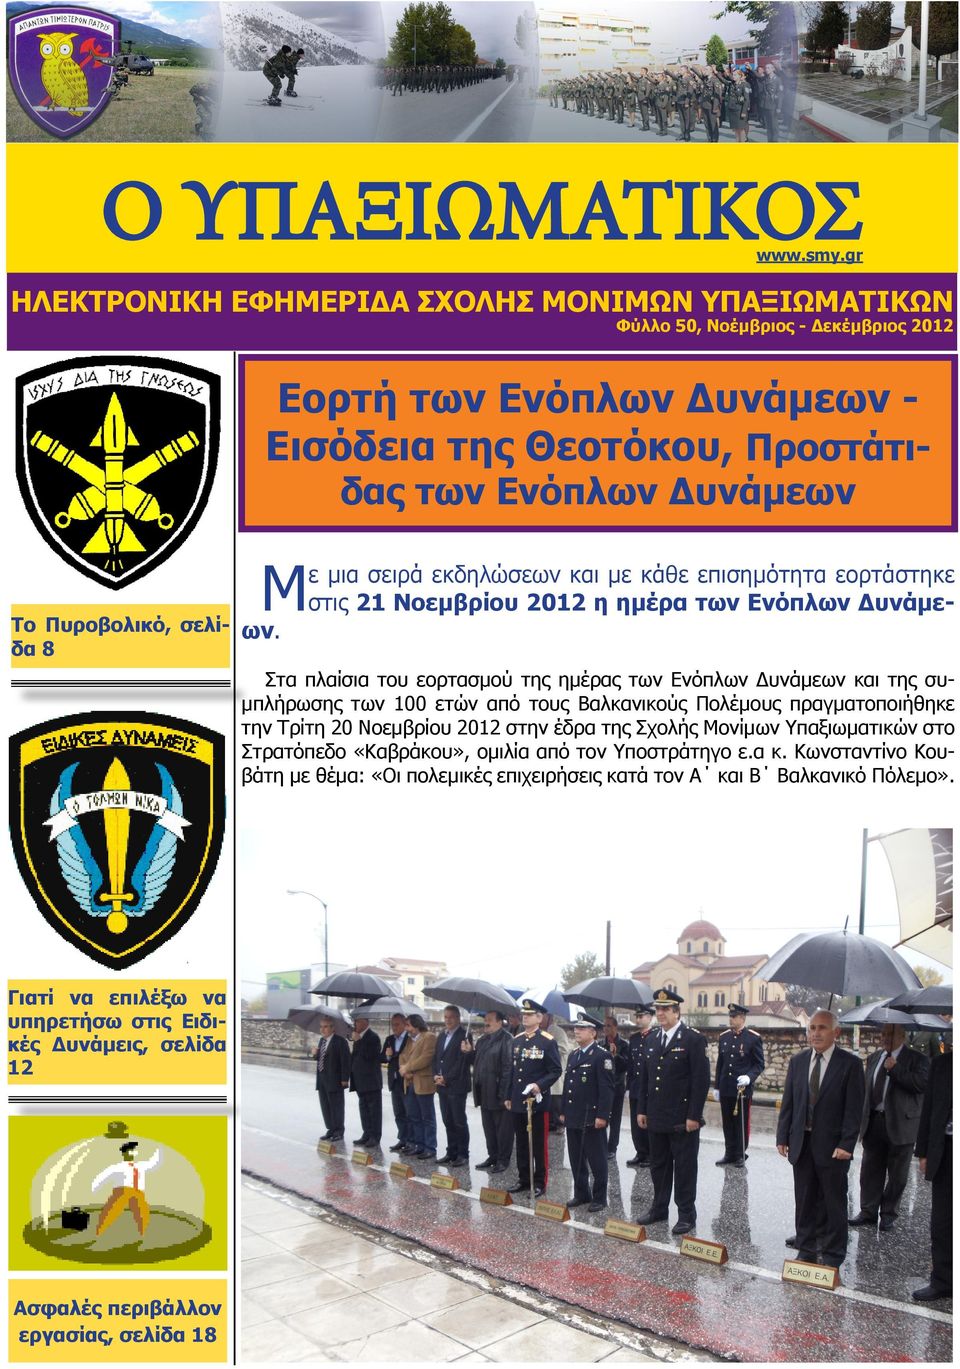 Στα πλαίσια του εορτασμού της ημέρας των Ενόπλων Δυνάμεων και της συμπλήρωσης των 100 ετών από τους Βαλκανικούς Πολέμους πραγματοποιήθηκε την Τρίτη 20 Νοεμβρίου 2012 στην έδρα της Σχολής